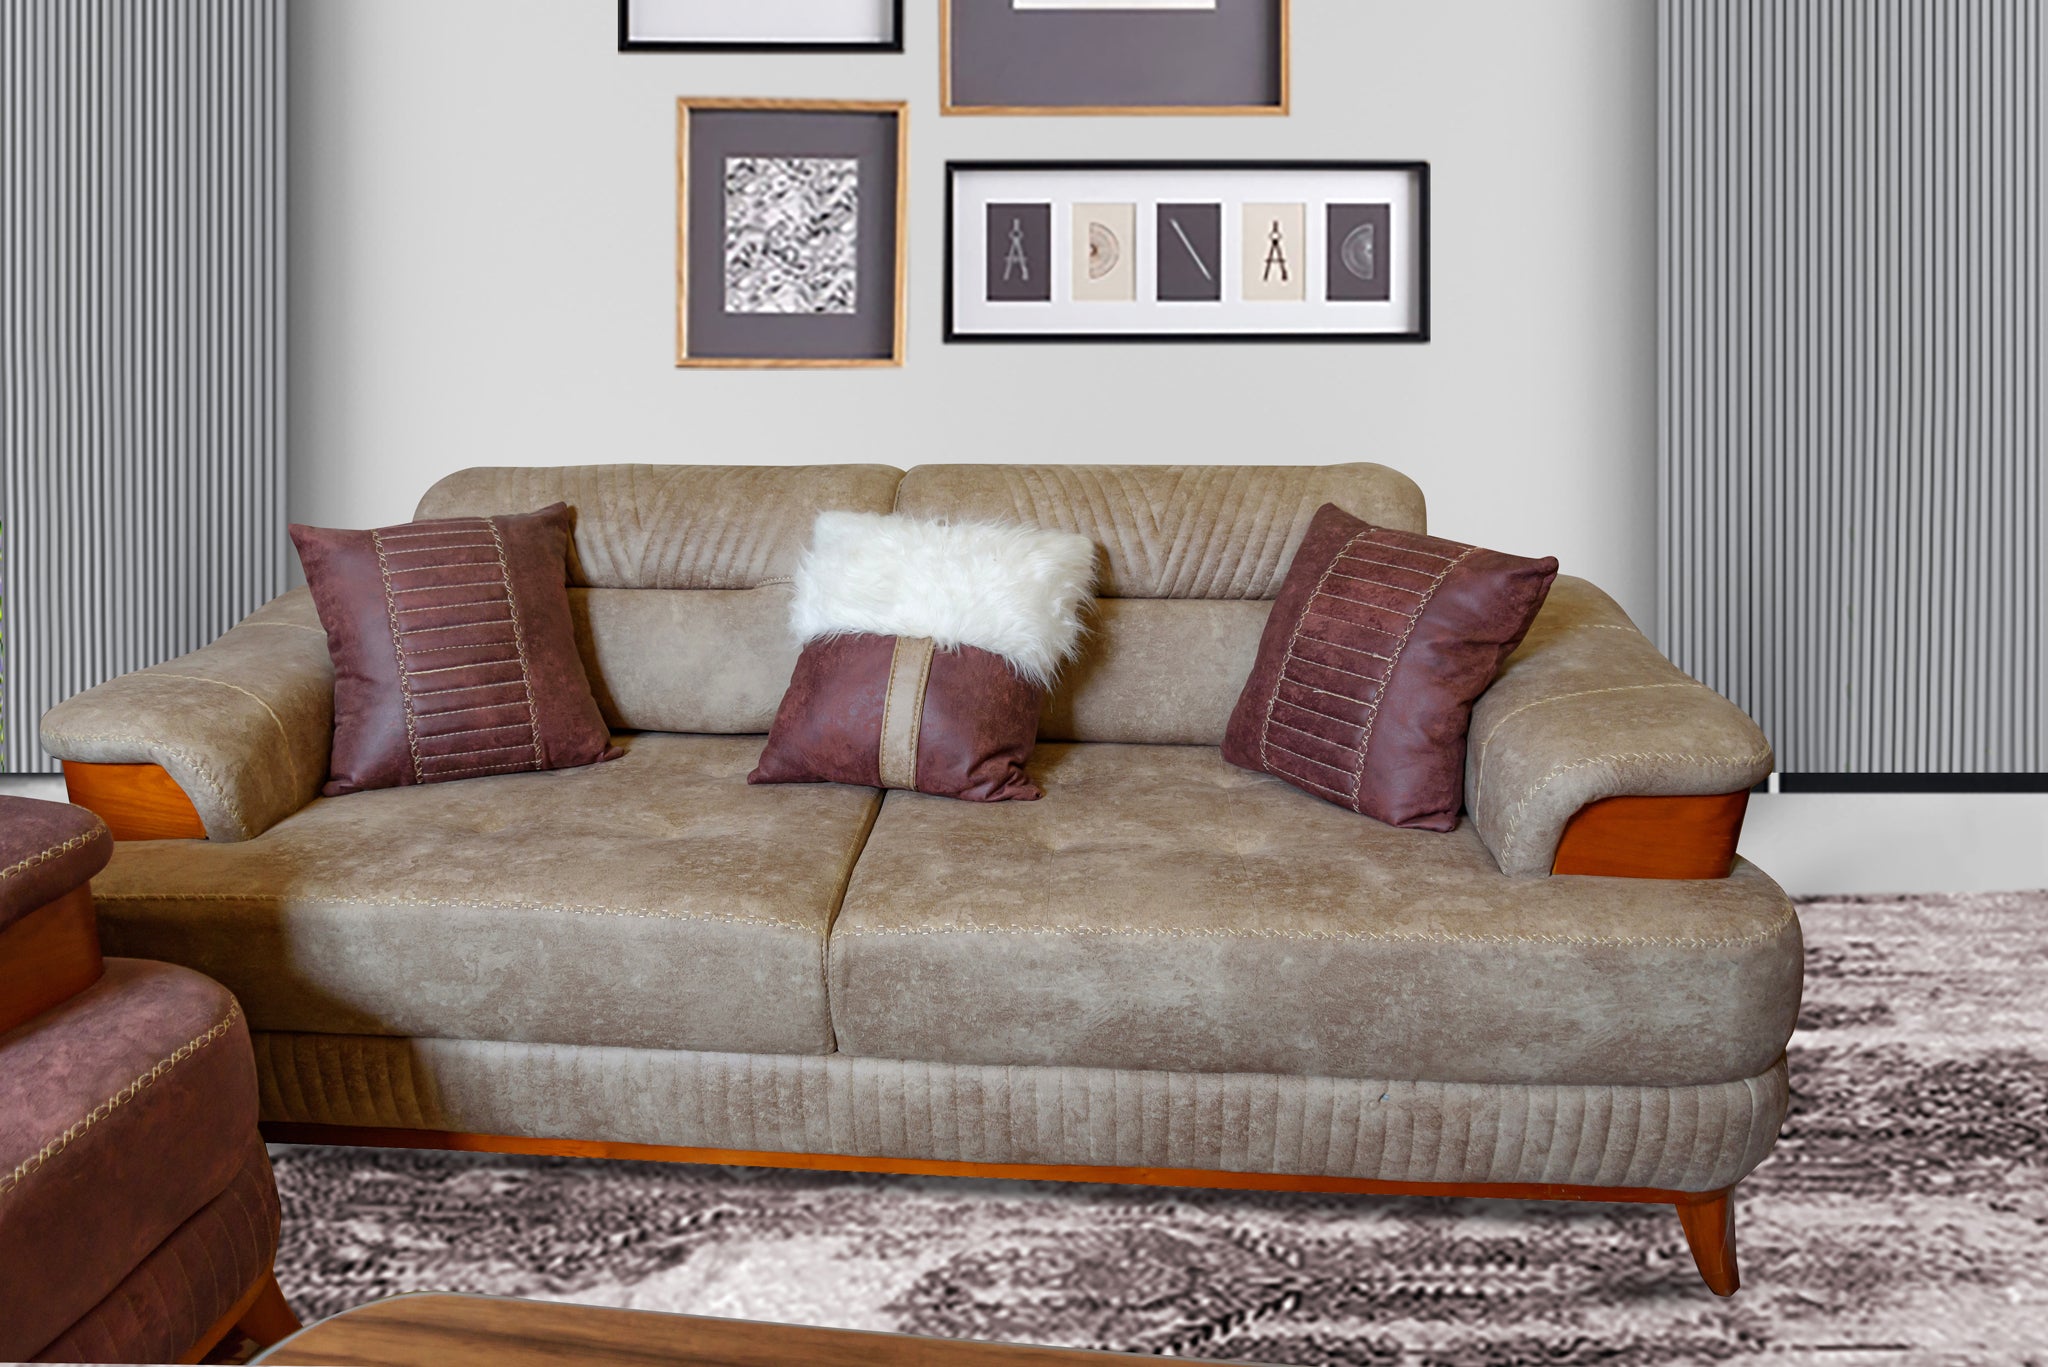 Serene Lounge living room